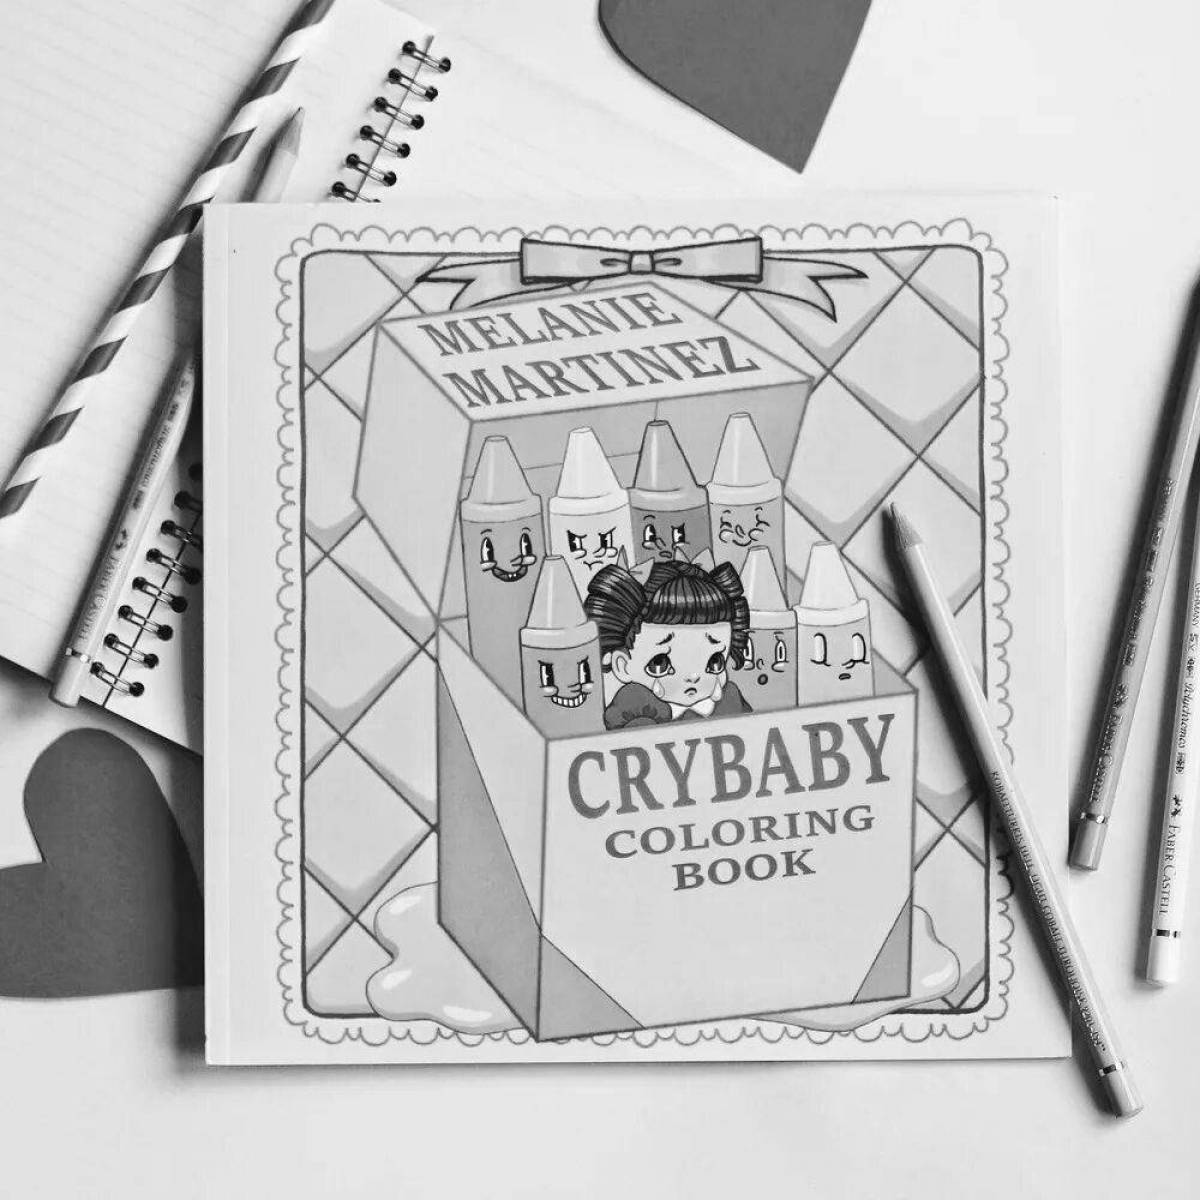 Bright crybaby coloring book